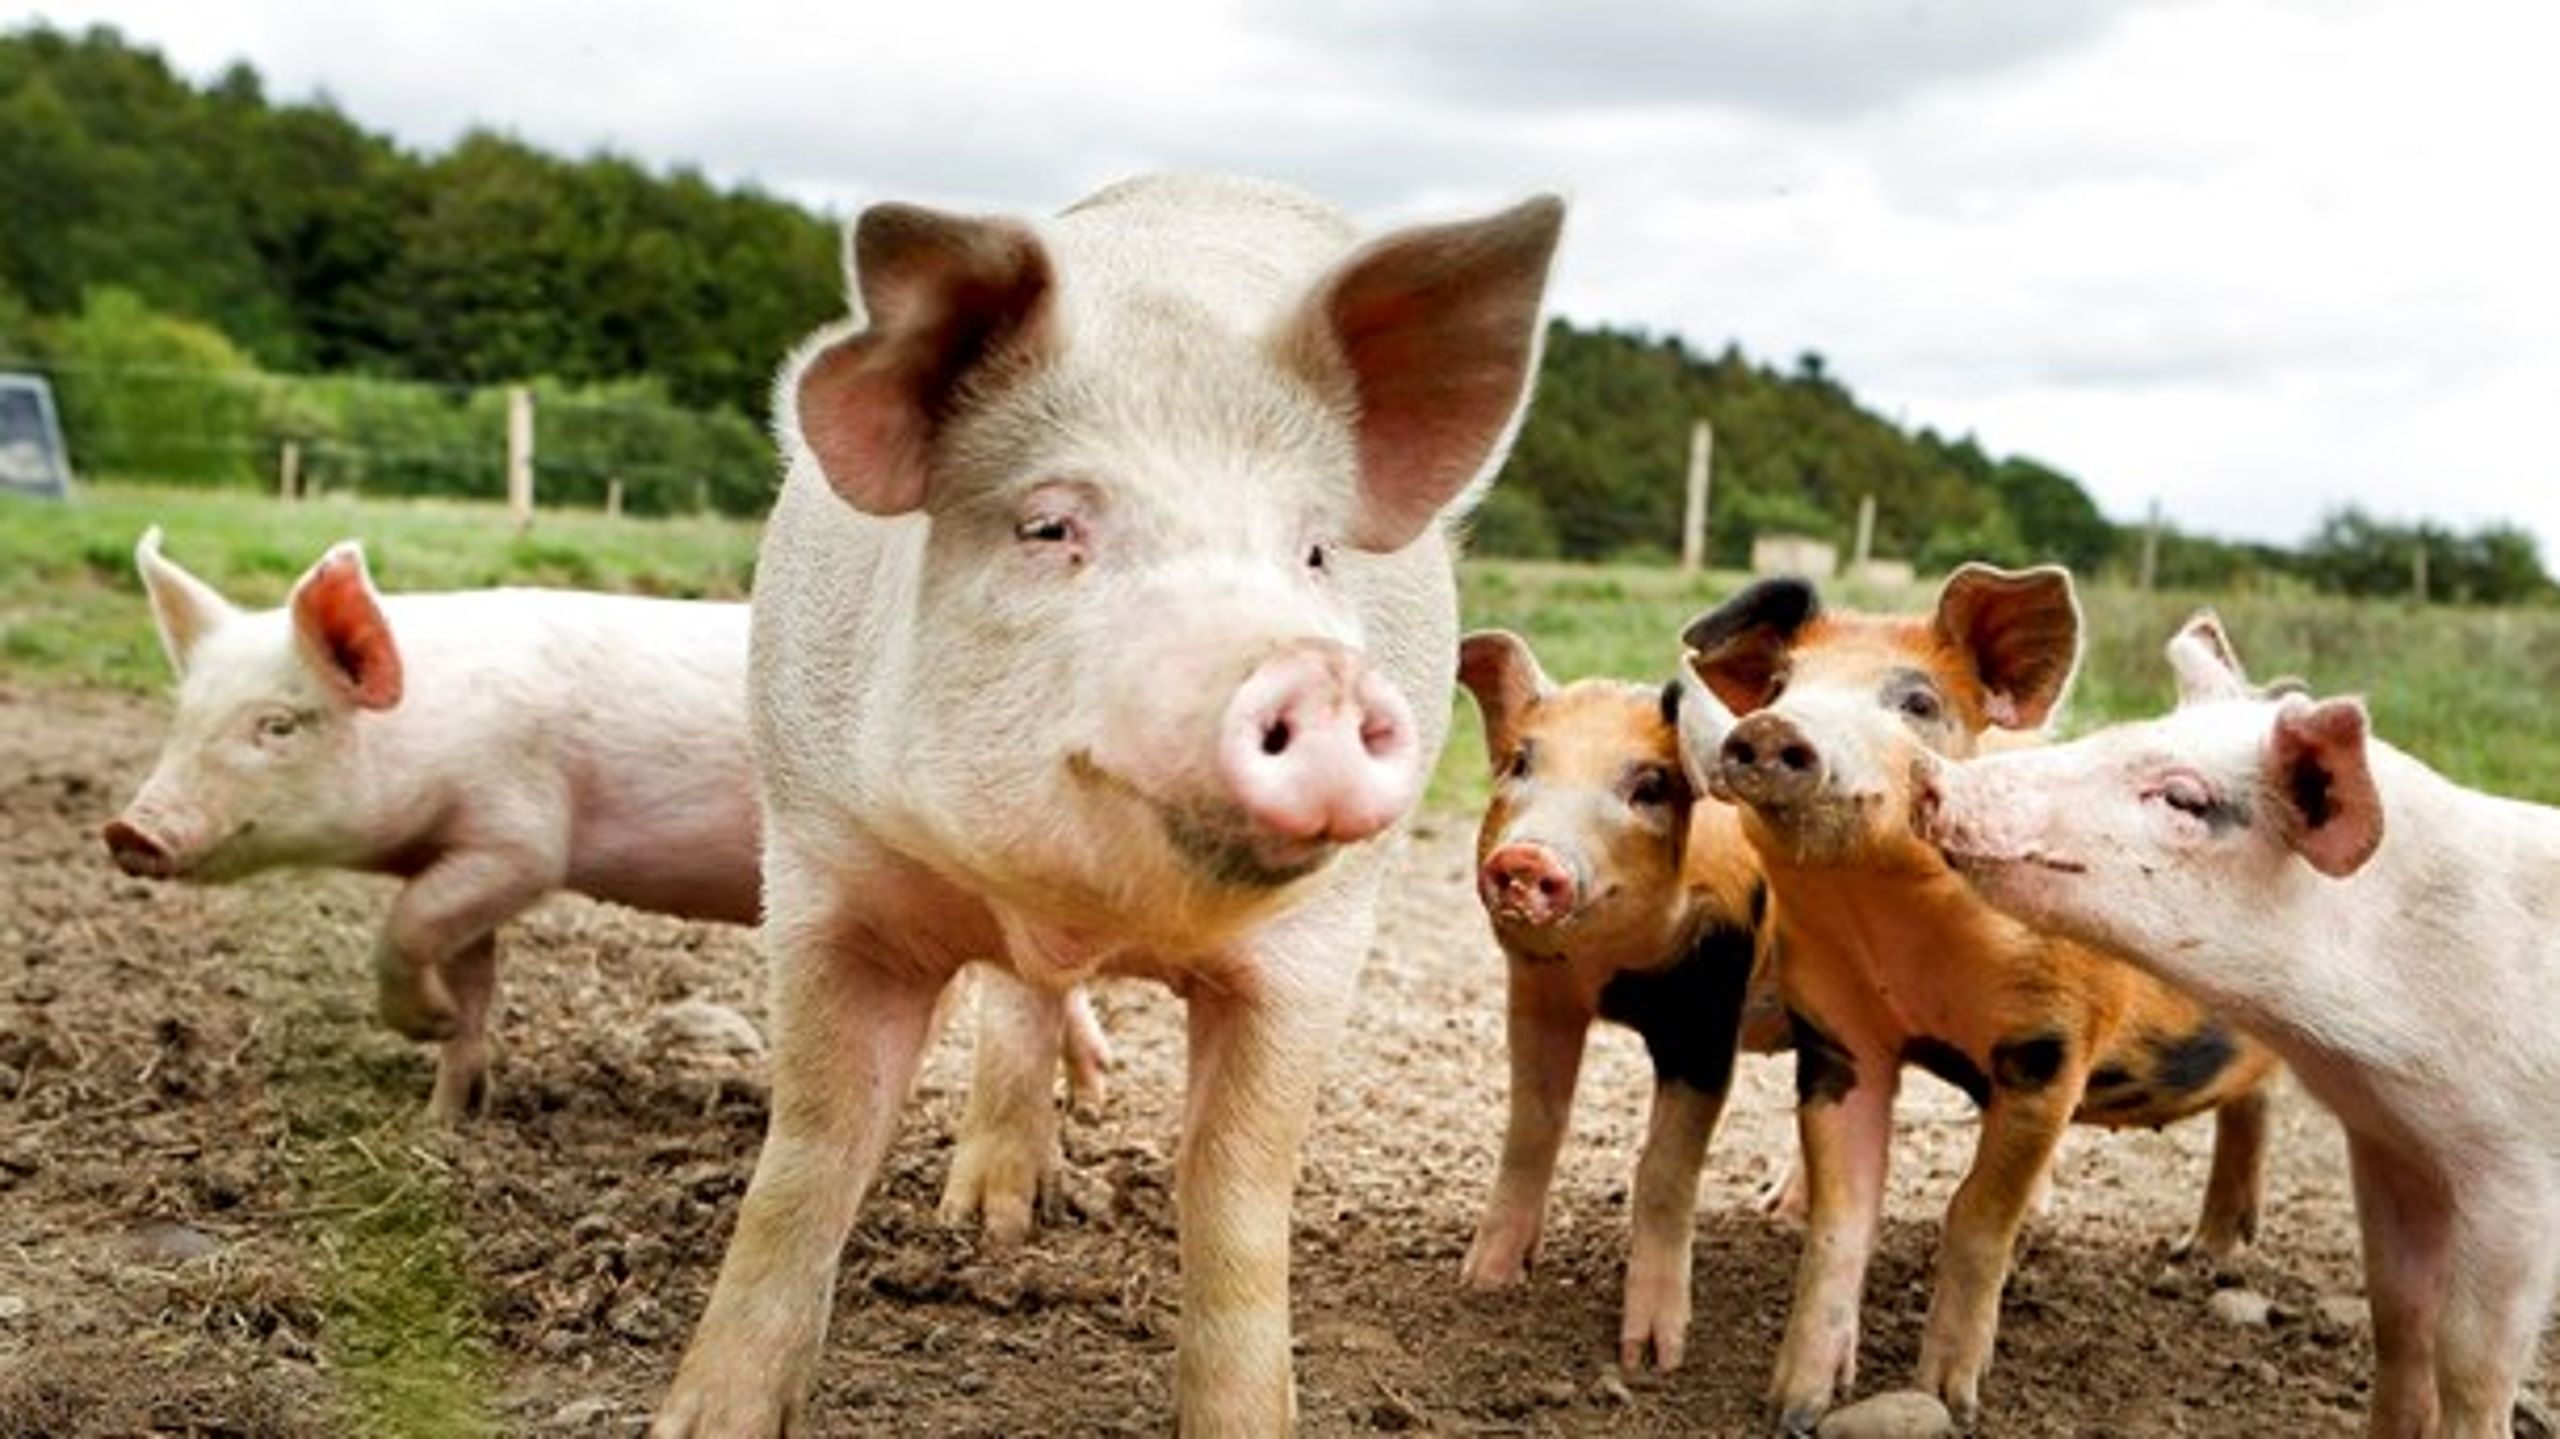 Enhedslisten har foreslået at halvere dansk svineproduktion for at nå klimamålene. Det vil være skadeligt for dansk økonomi. Men det vil også skade klimaet, skriver Morten Messerschmidt (DF).